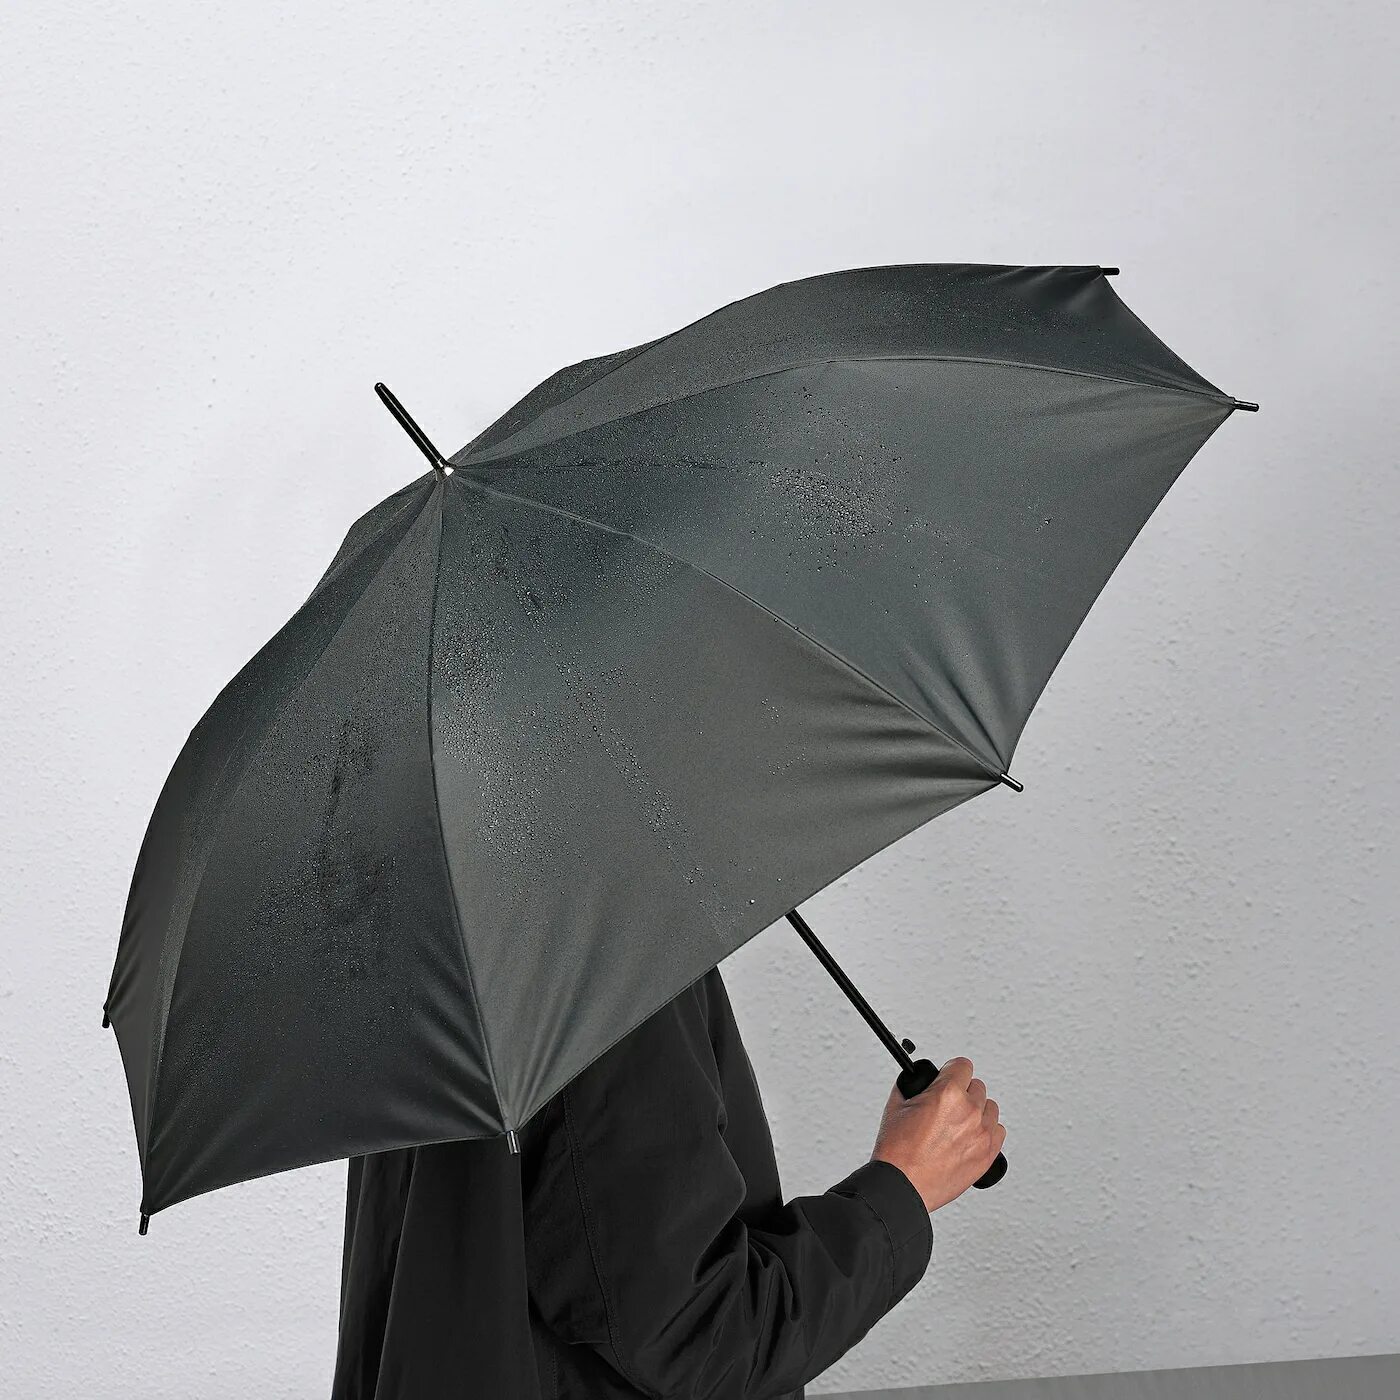 You take an umbrella today. KNALLA КНЭЛЛА зонт. Ikea KNALLA зонт. Зонт KNALLA КНЭЛЛА икеа. KNALLA КНЭЛЛА зонт, черный.